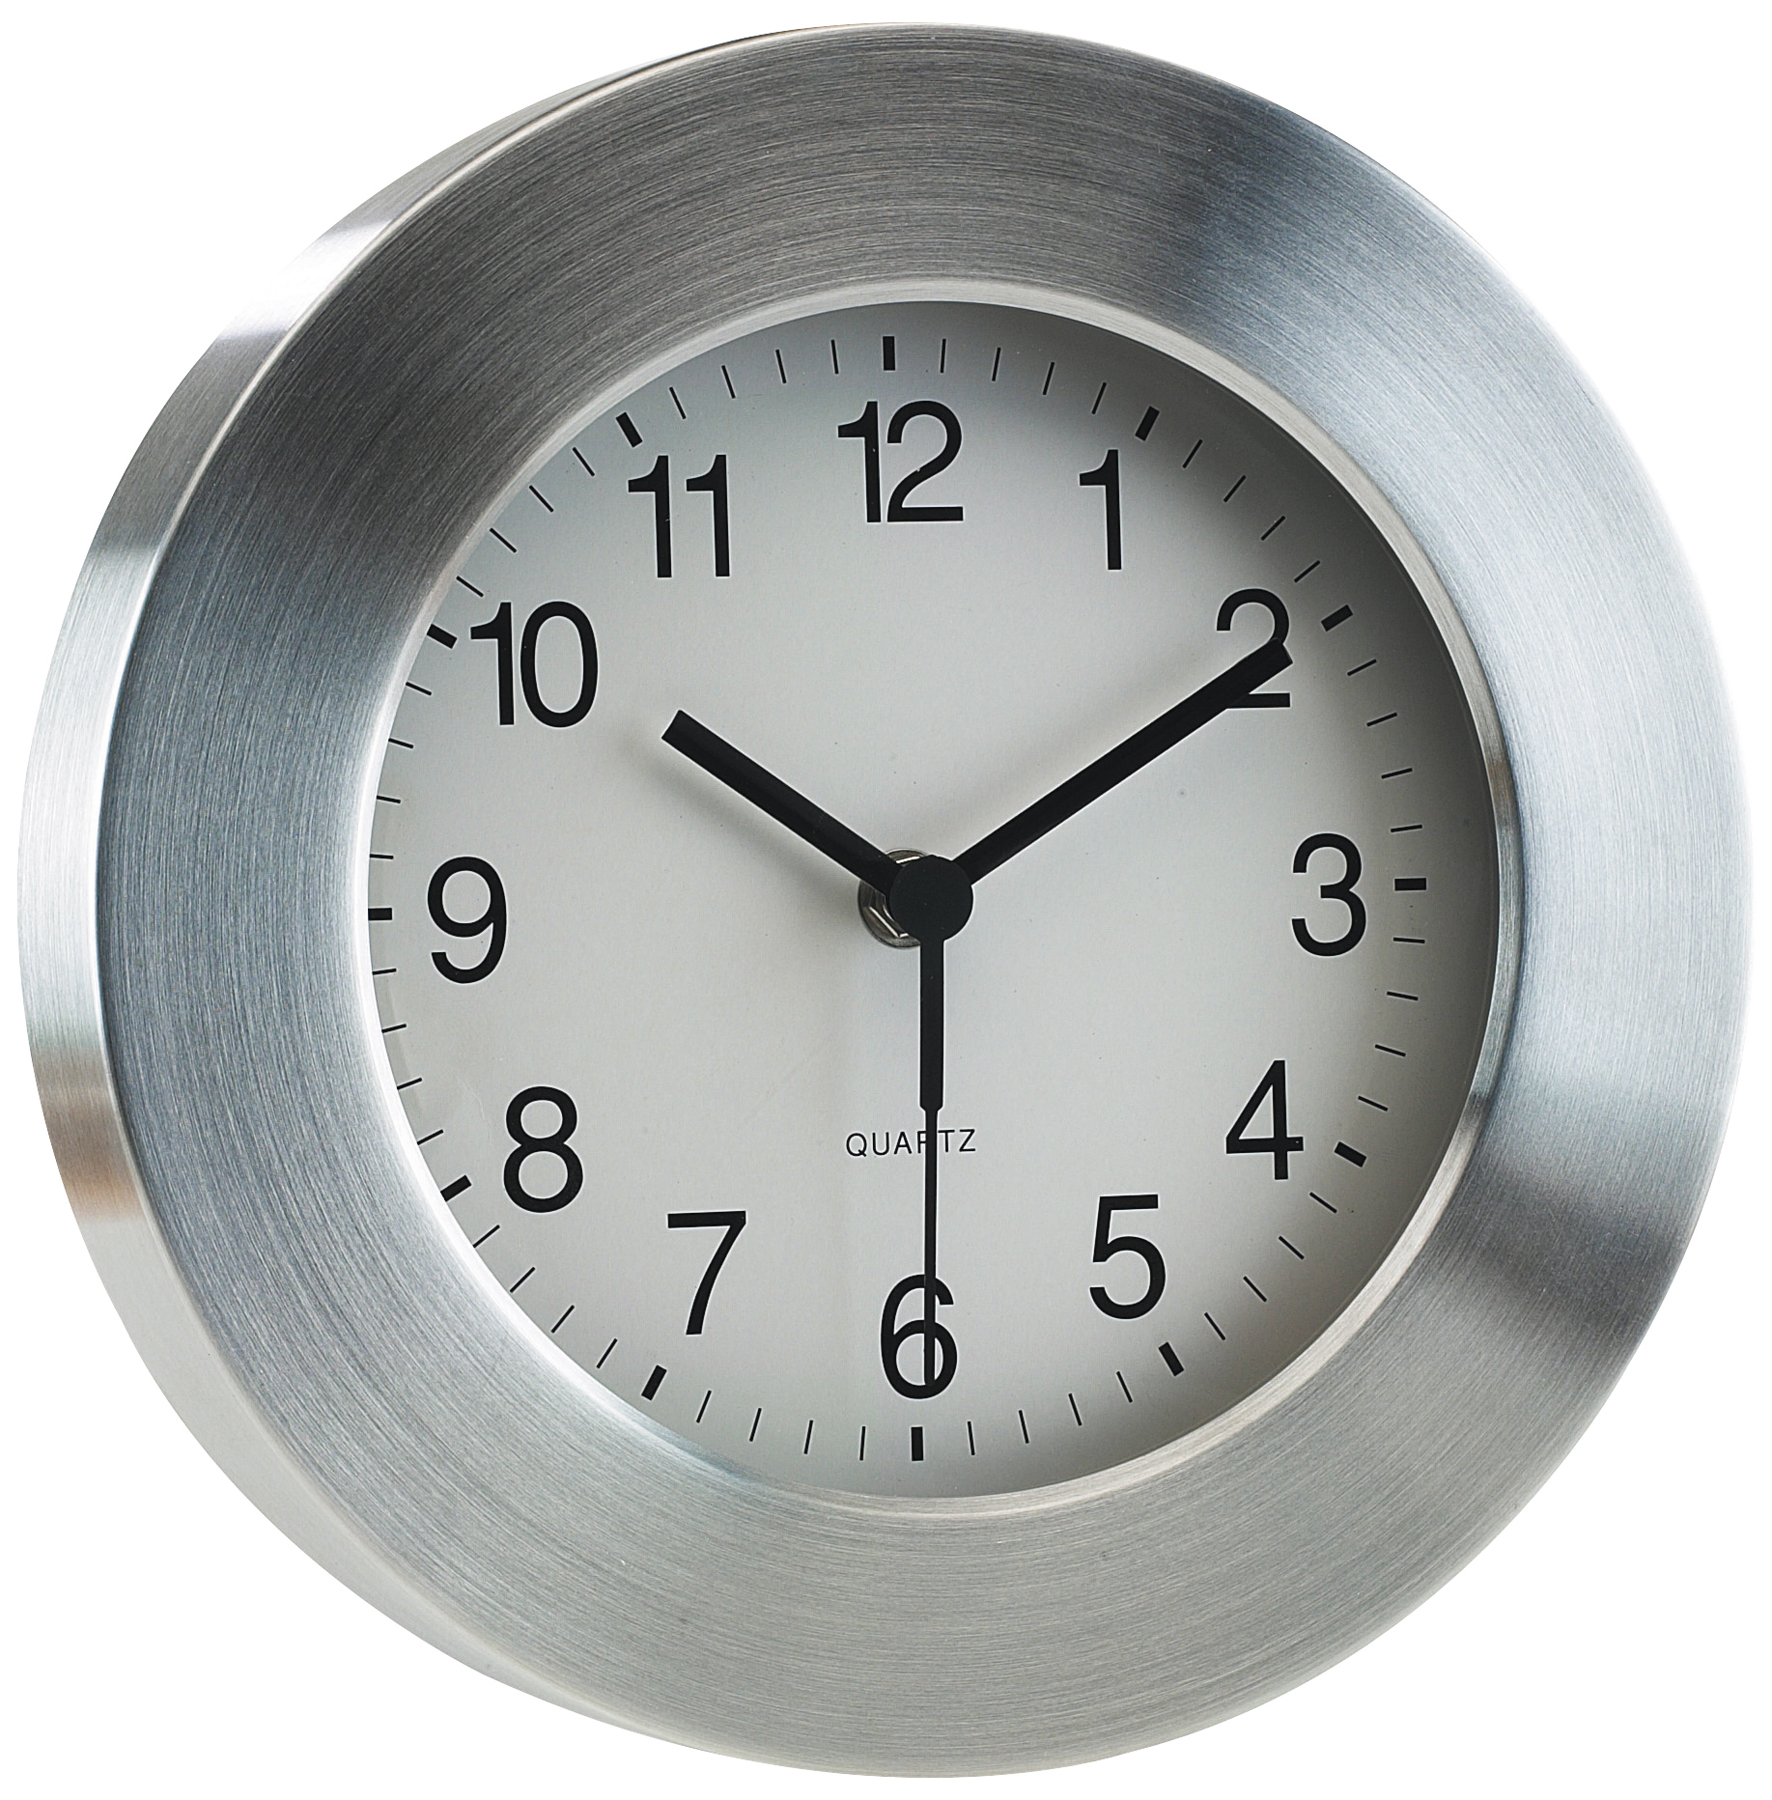 Aluminiowy zegar VENUS, srebrny